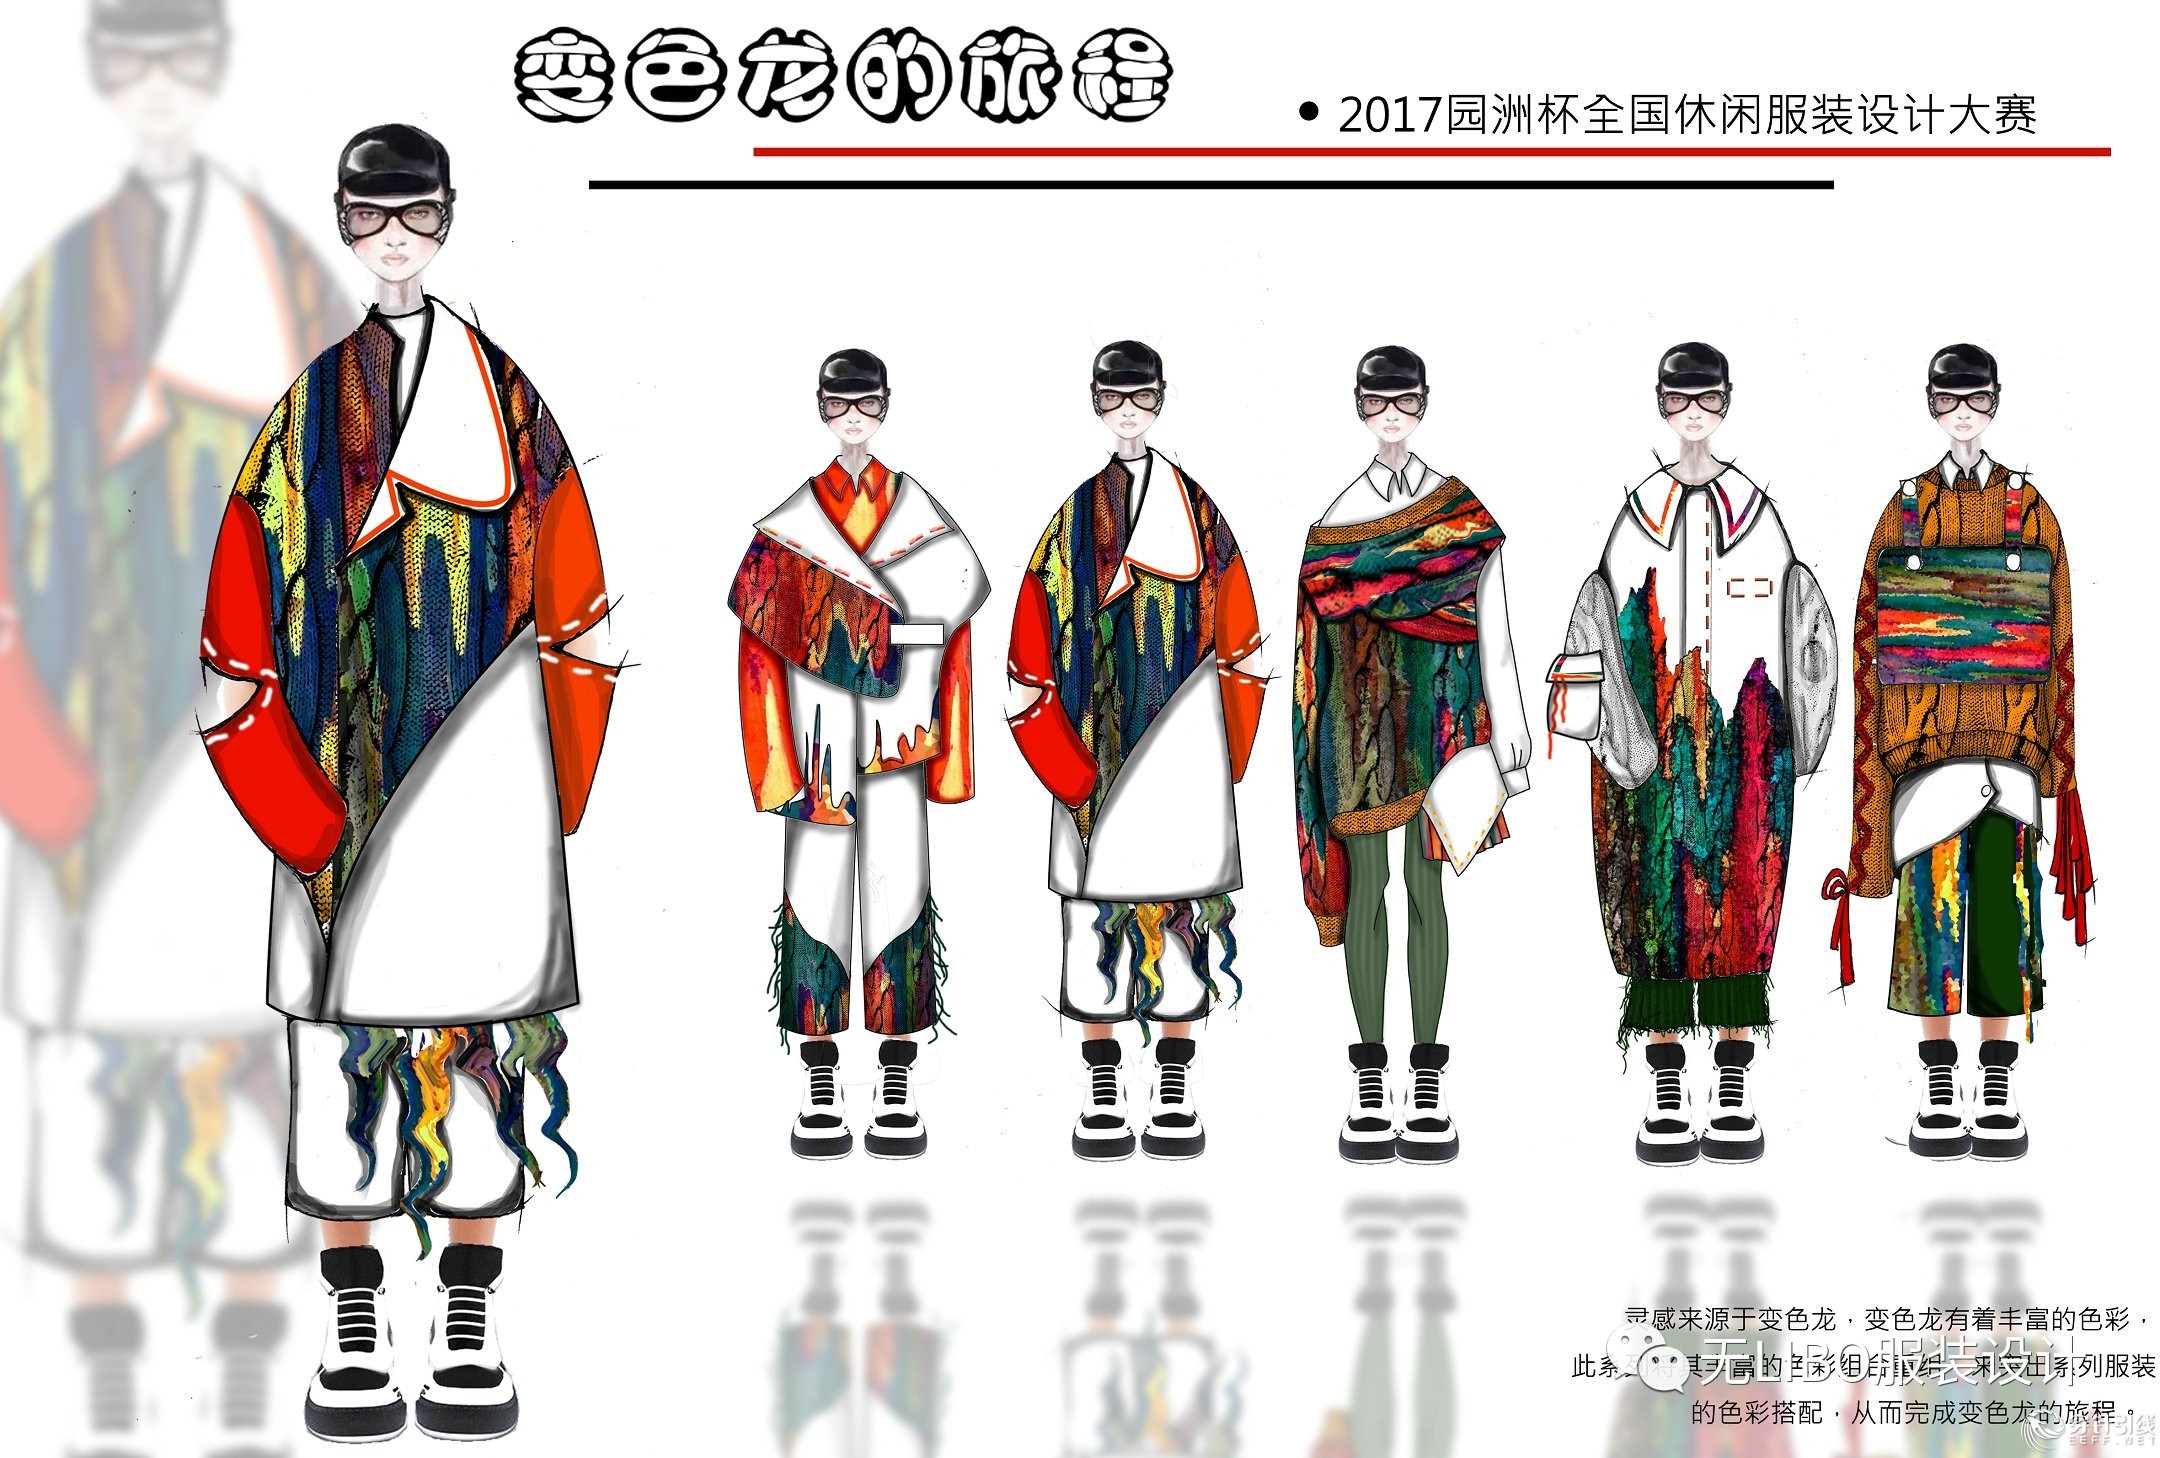 中国家居服设计创新大赛-大赛作品设计-服装设计